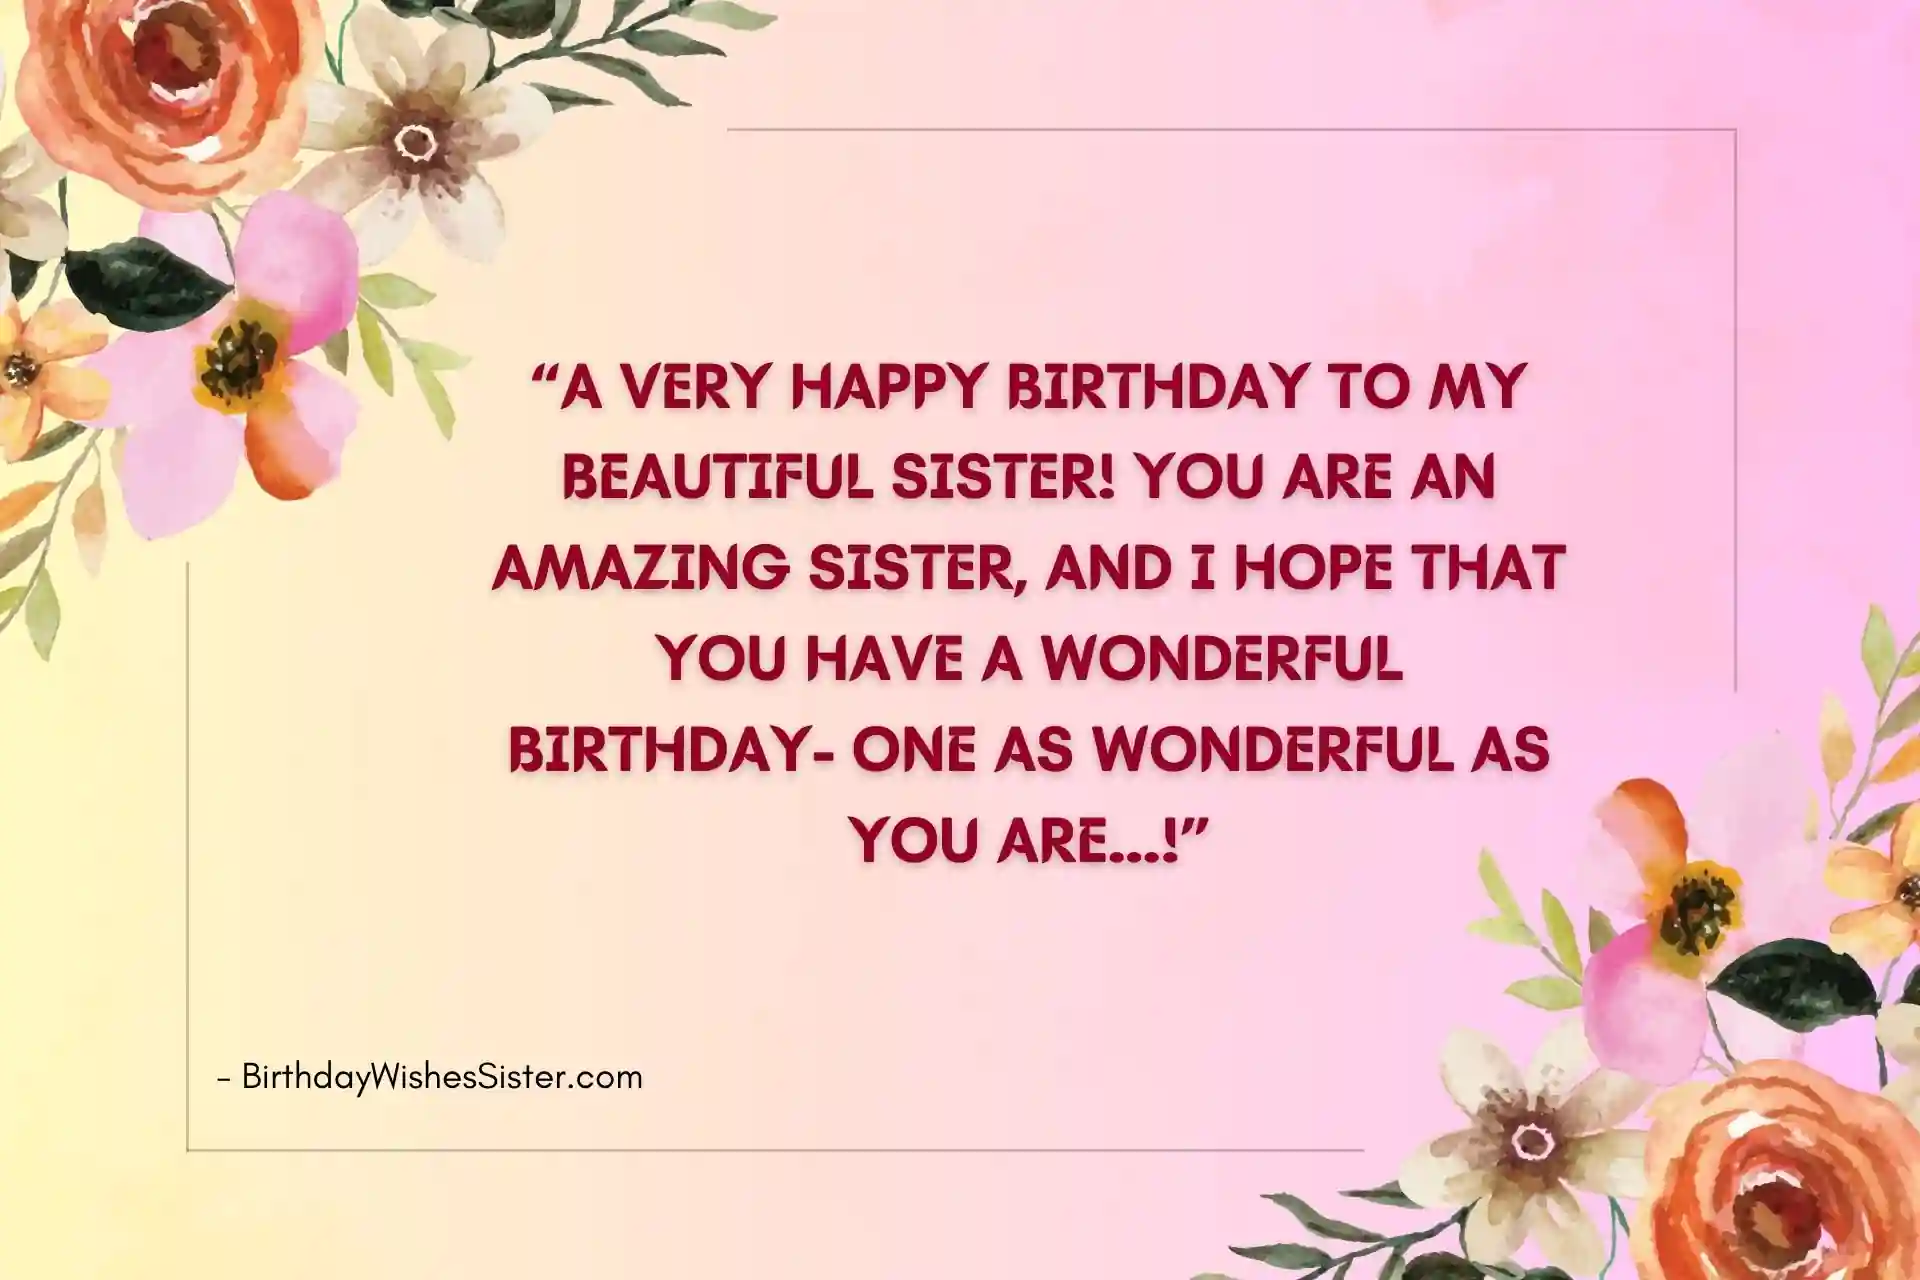 Happy Birthday Blessings For Sister, Birthday Prayer For Sister